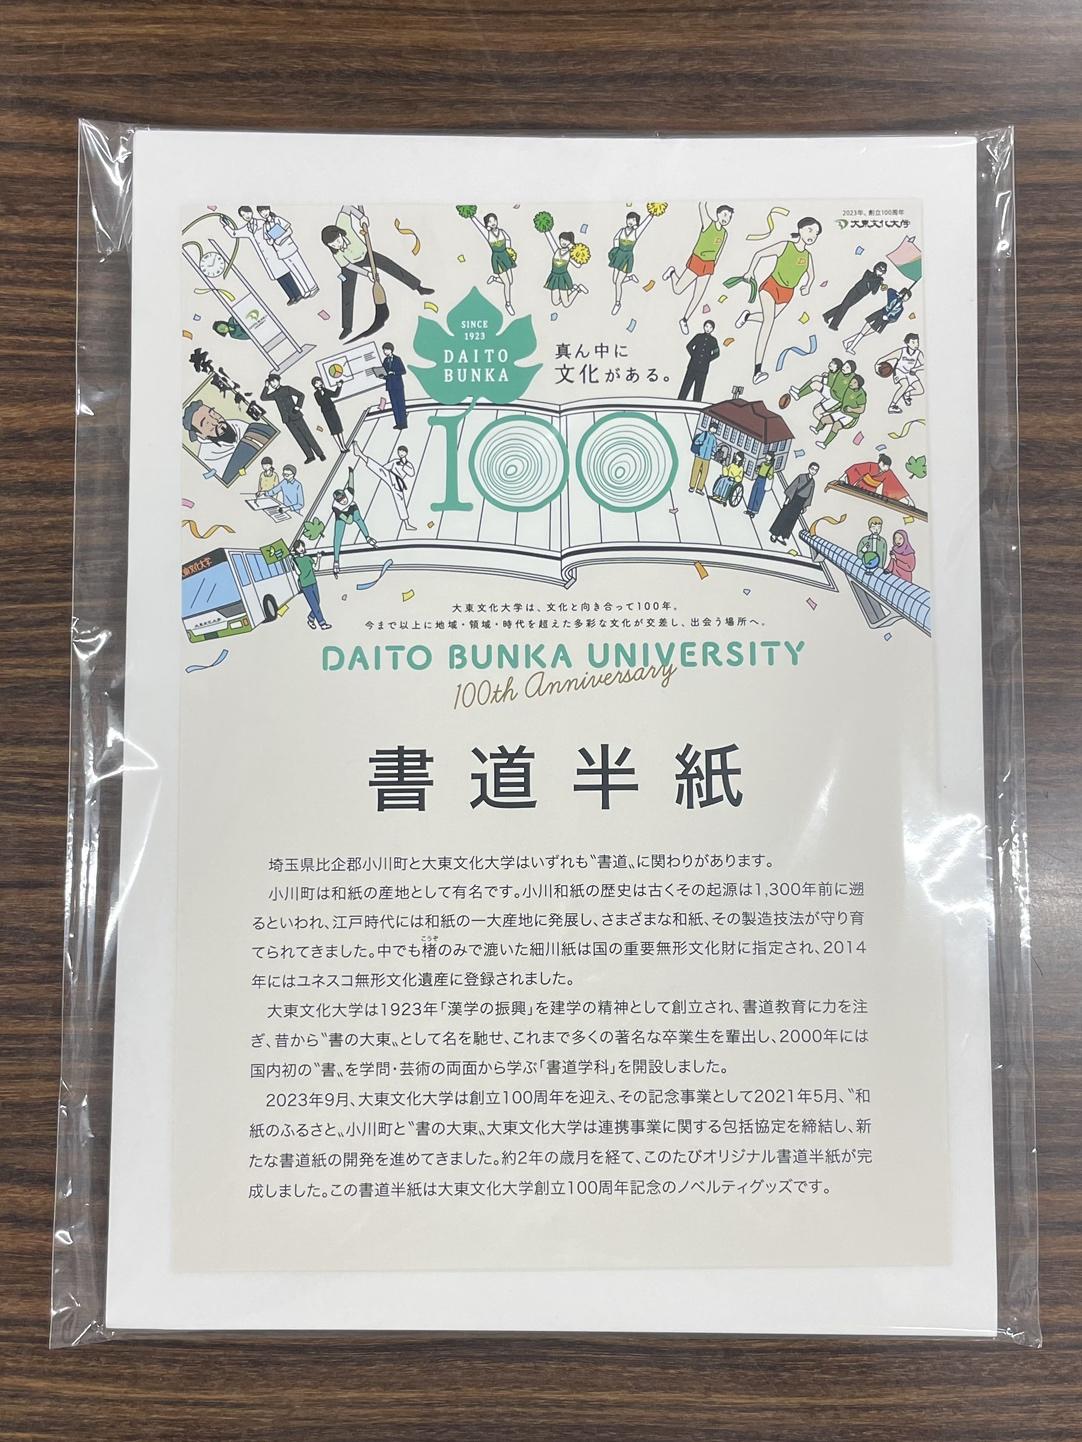 大東文化大学と埼玉県小川町がオリジナル書道用紙を共同開発 -- 書道半紙、一筆箋など大学創立100周年記念グッズとして展開